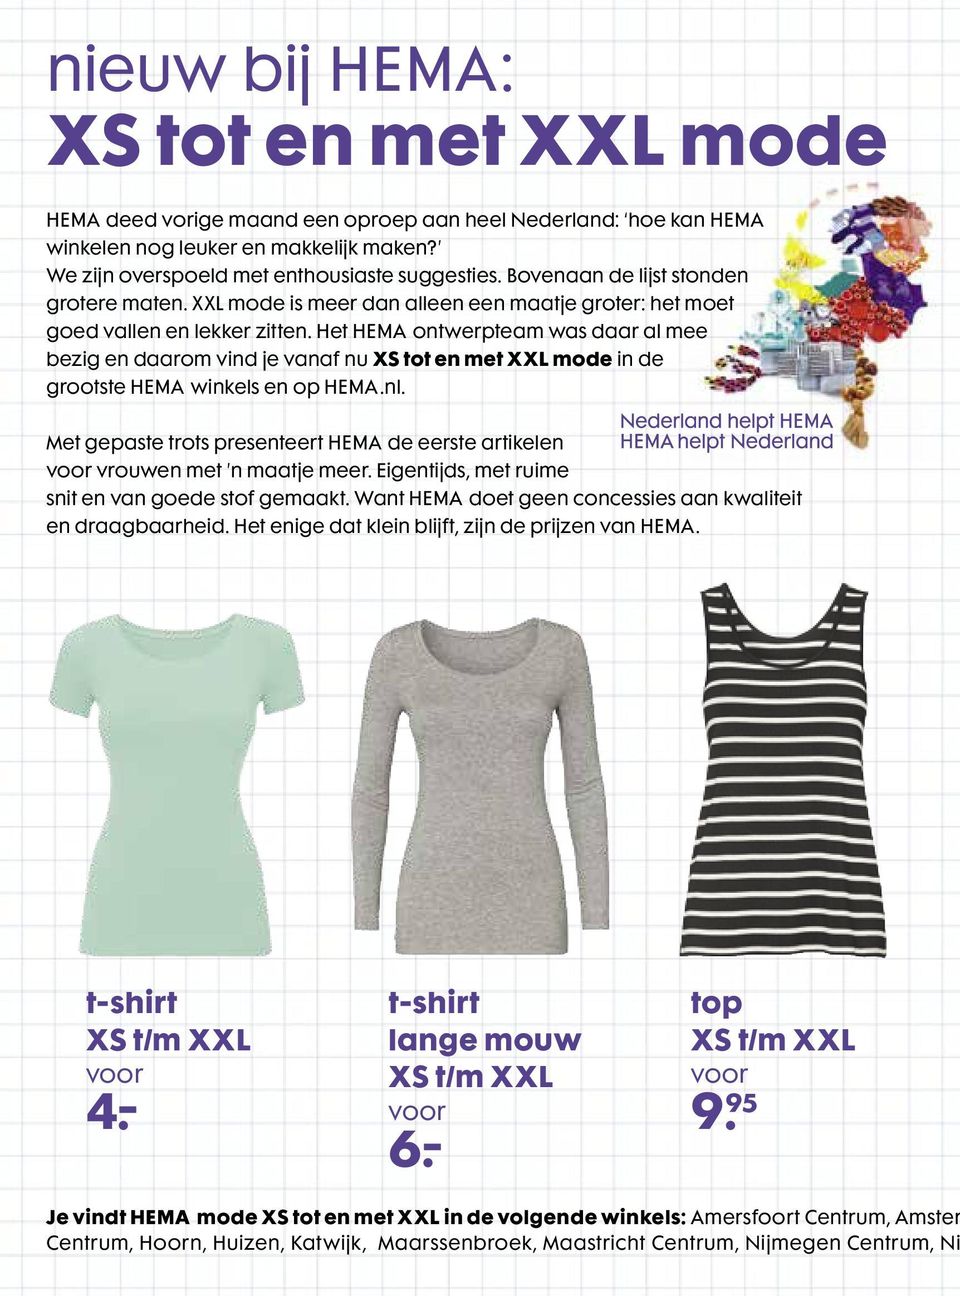 Het HEMA ontwerpteam was daar al mee bezig en daarom vind je vanaf XS tot en met XXL mode in de grootste HEMA winkels en op HEMA.nl.